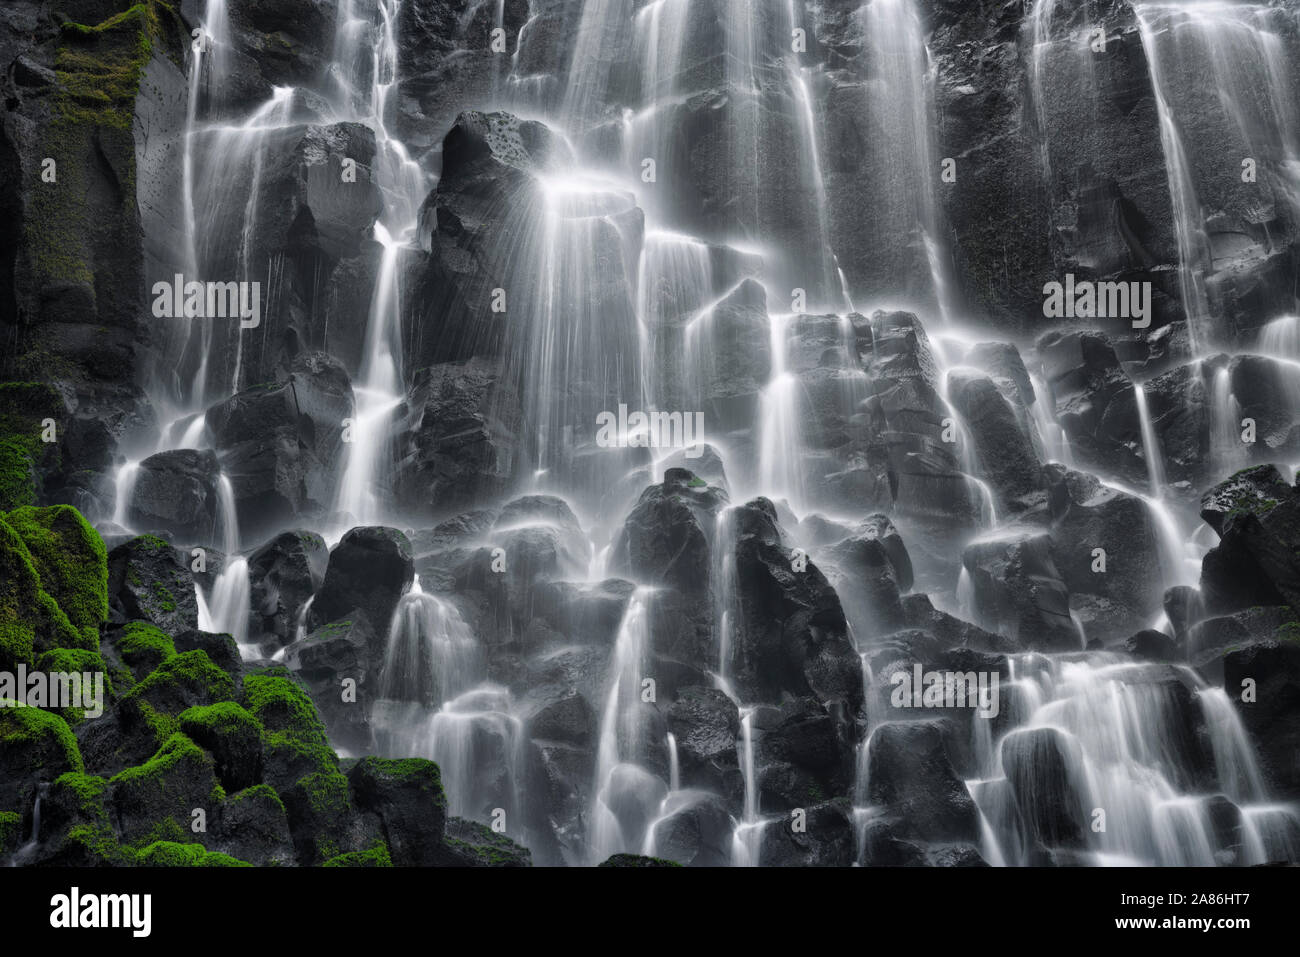 Velo d'acqua immagini e fotografie stock ad alta risoluzione - Alamy